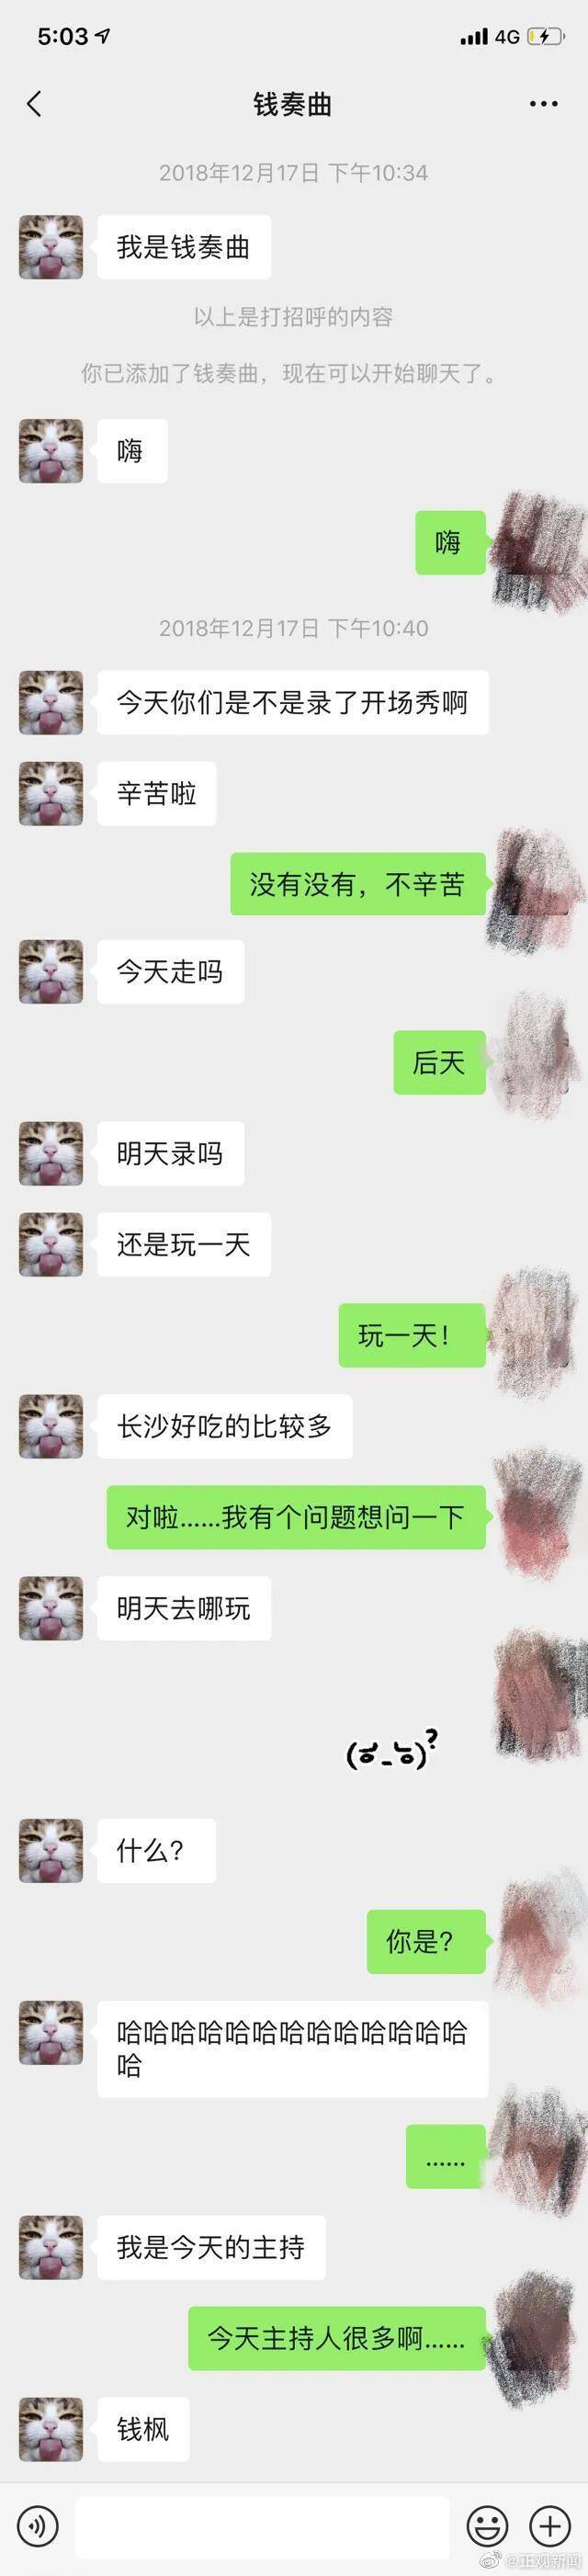 网友发文称遭湖南卫视主持人强奸 报警后未立案